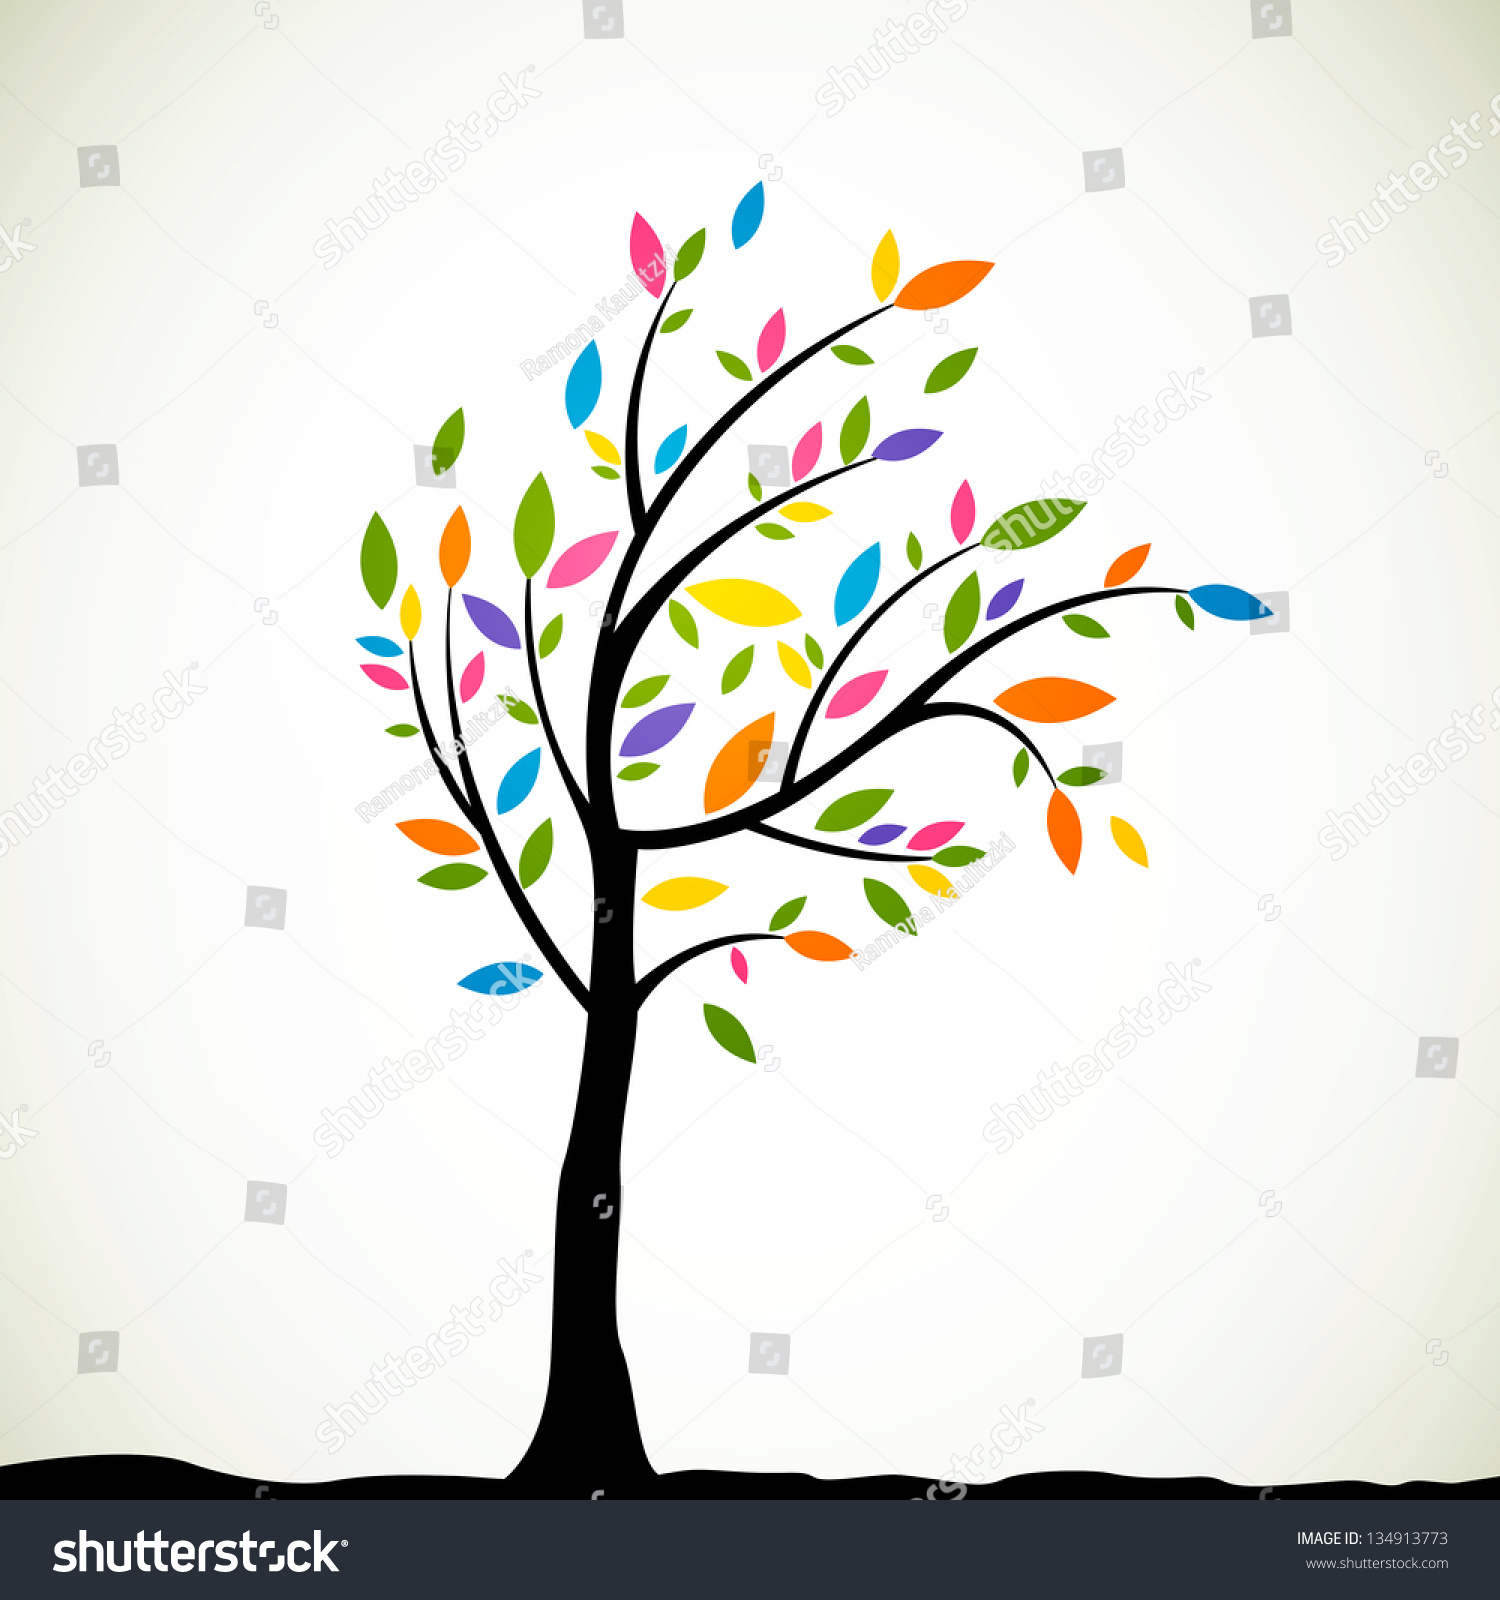 Vector Illustration Abstract Tree Stock Vector 134913773 - Shutterstock